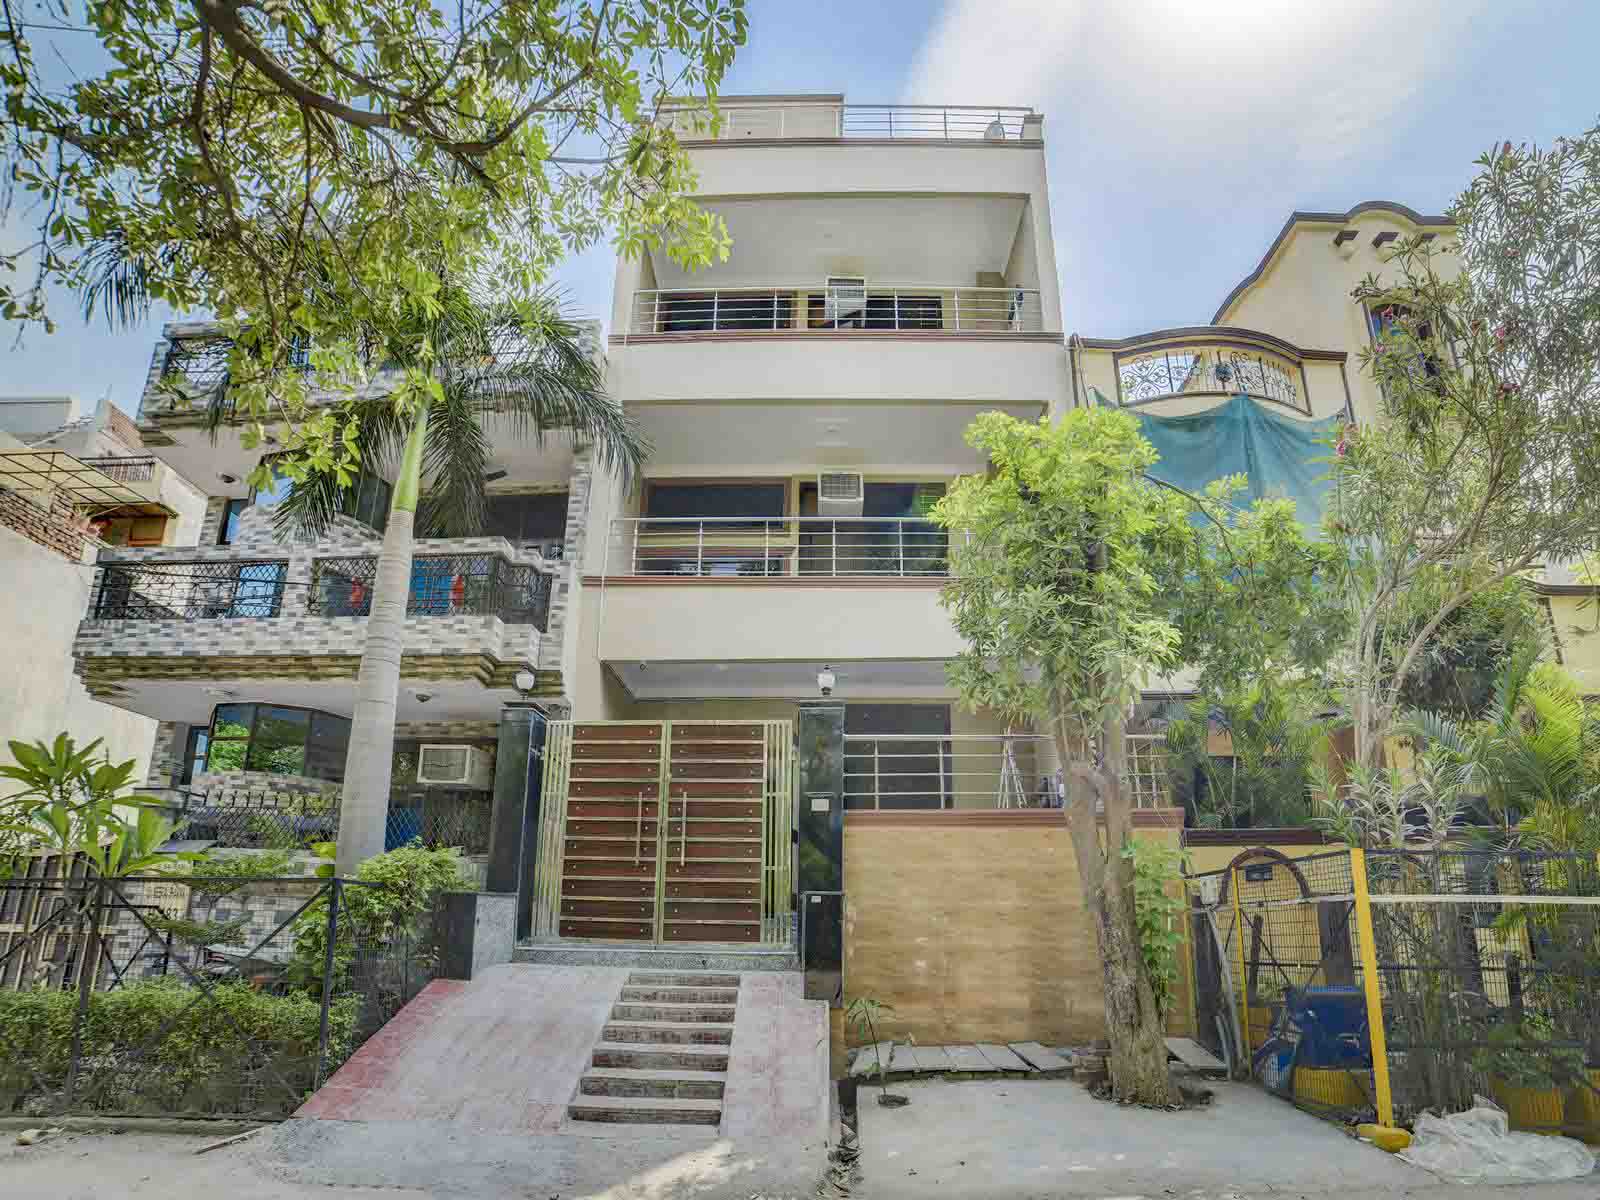 Zolo Planet - Hostel in Noida